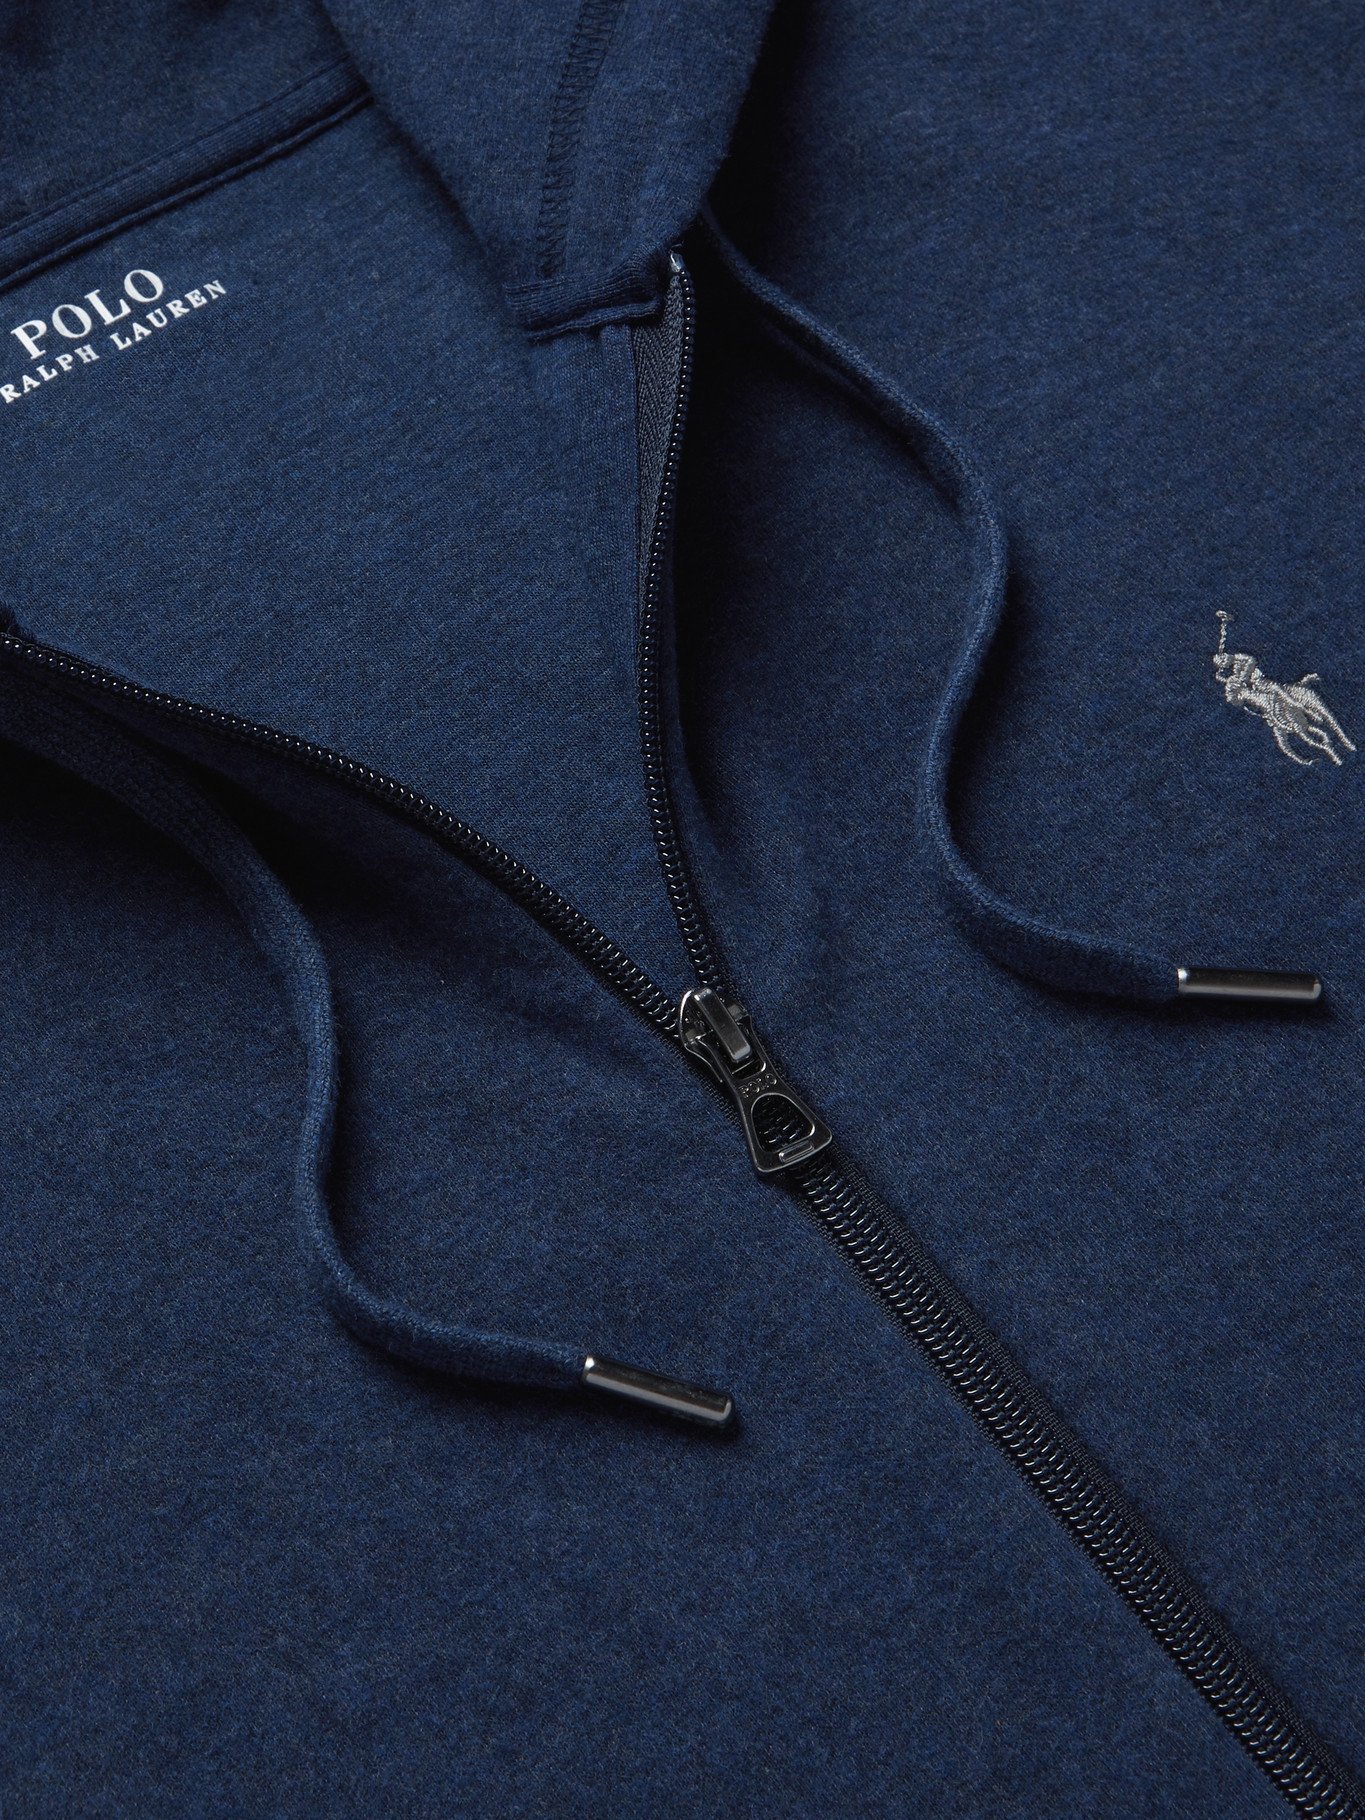 POLO RALPH LAUREN - Logo-Embroidered Cotton-Blend Jersey Zip-Up Hoodie -  Blue - XS Polo Ralph Lauren